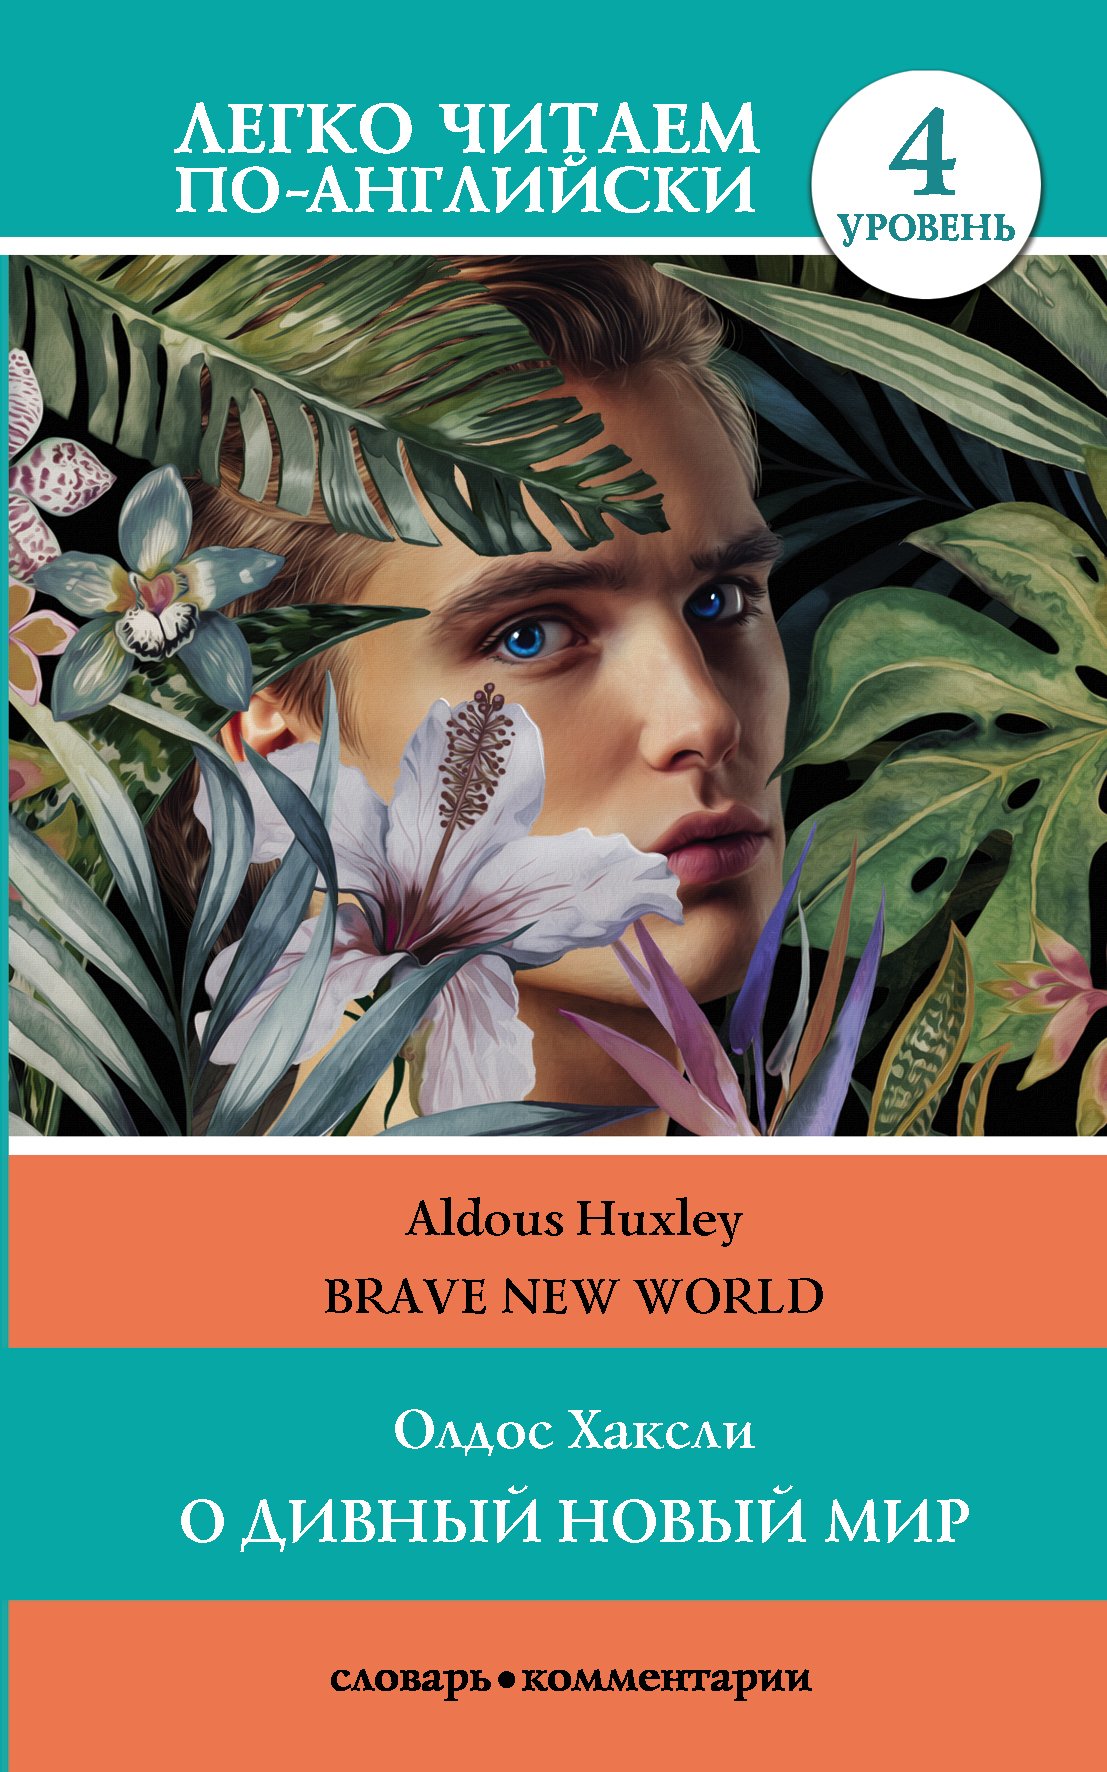 Скачать О дивный новый мир / Brave New World. 4 уровень - Олдос Хаксли